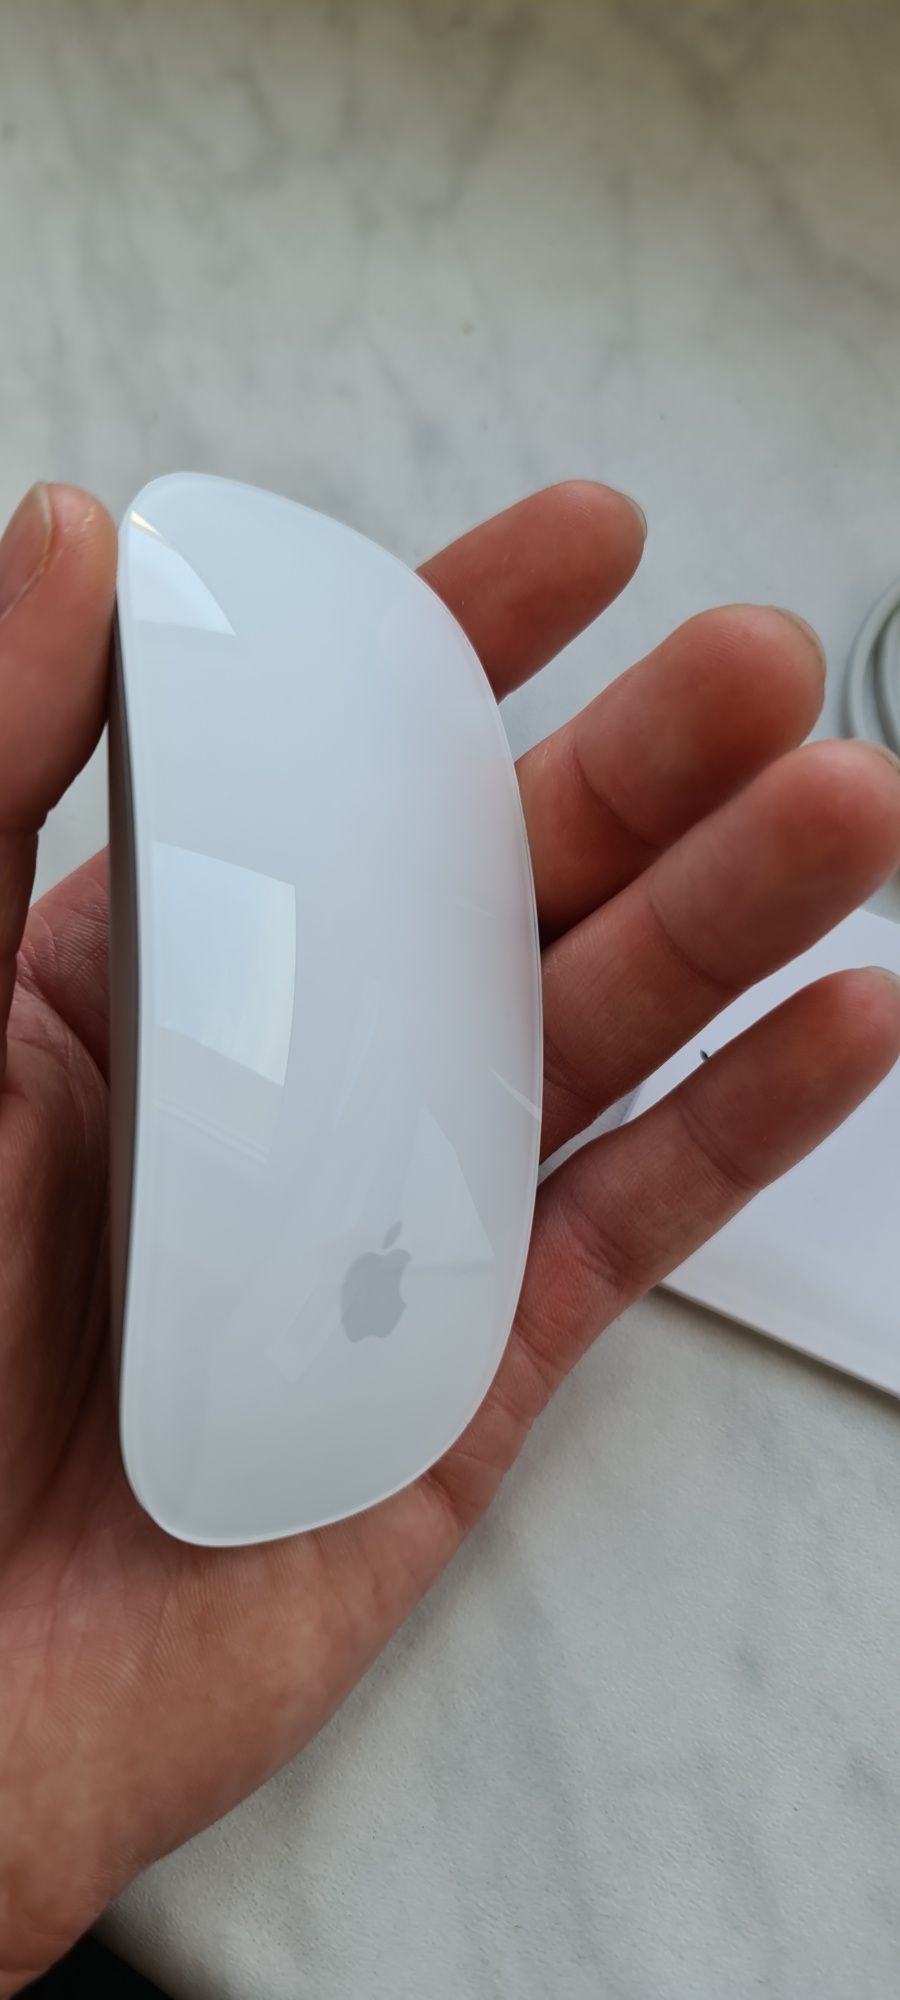 Myszka Apple Magic Mouse 2 Stan idealny! Dowód Zakupu! Używana 2 tyg.!